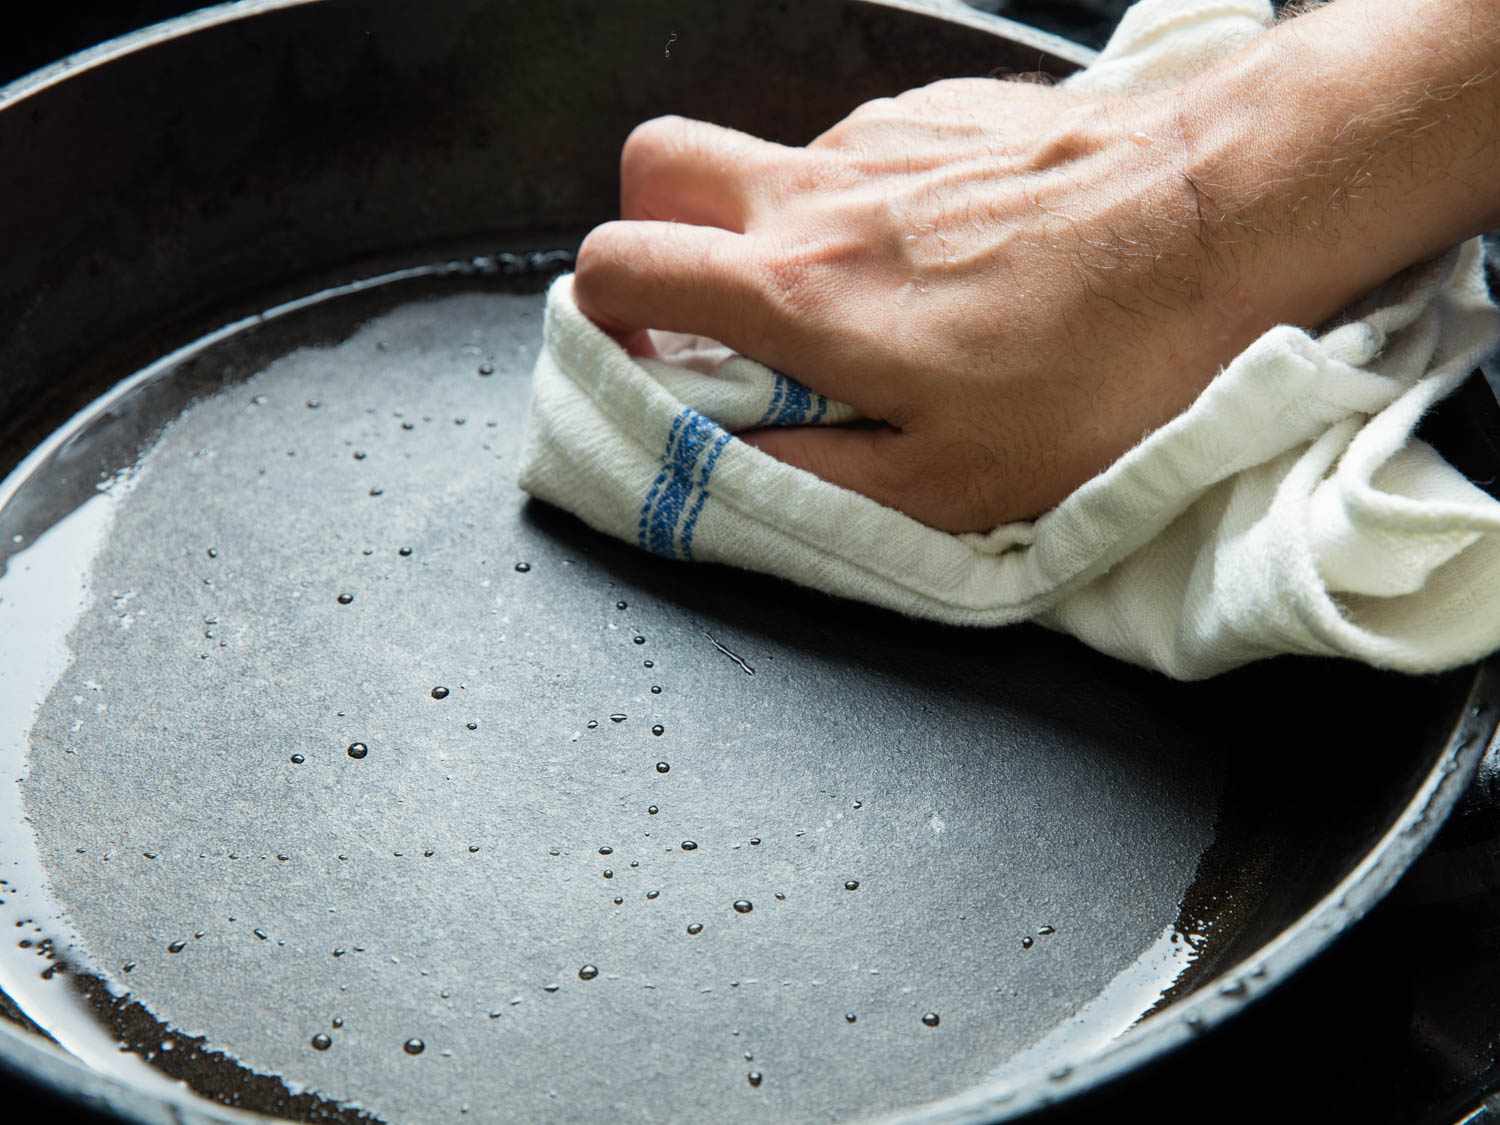 洗涤后干燥铸铁盘彻底。